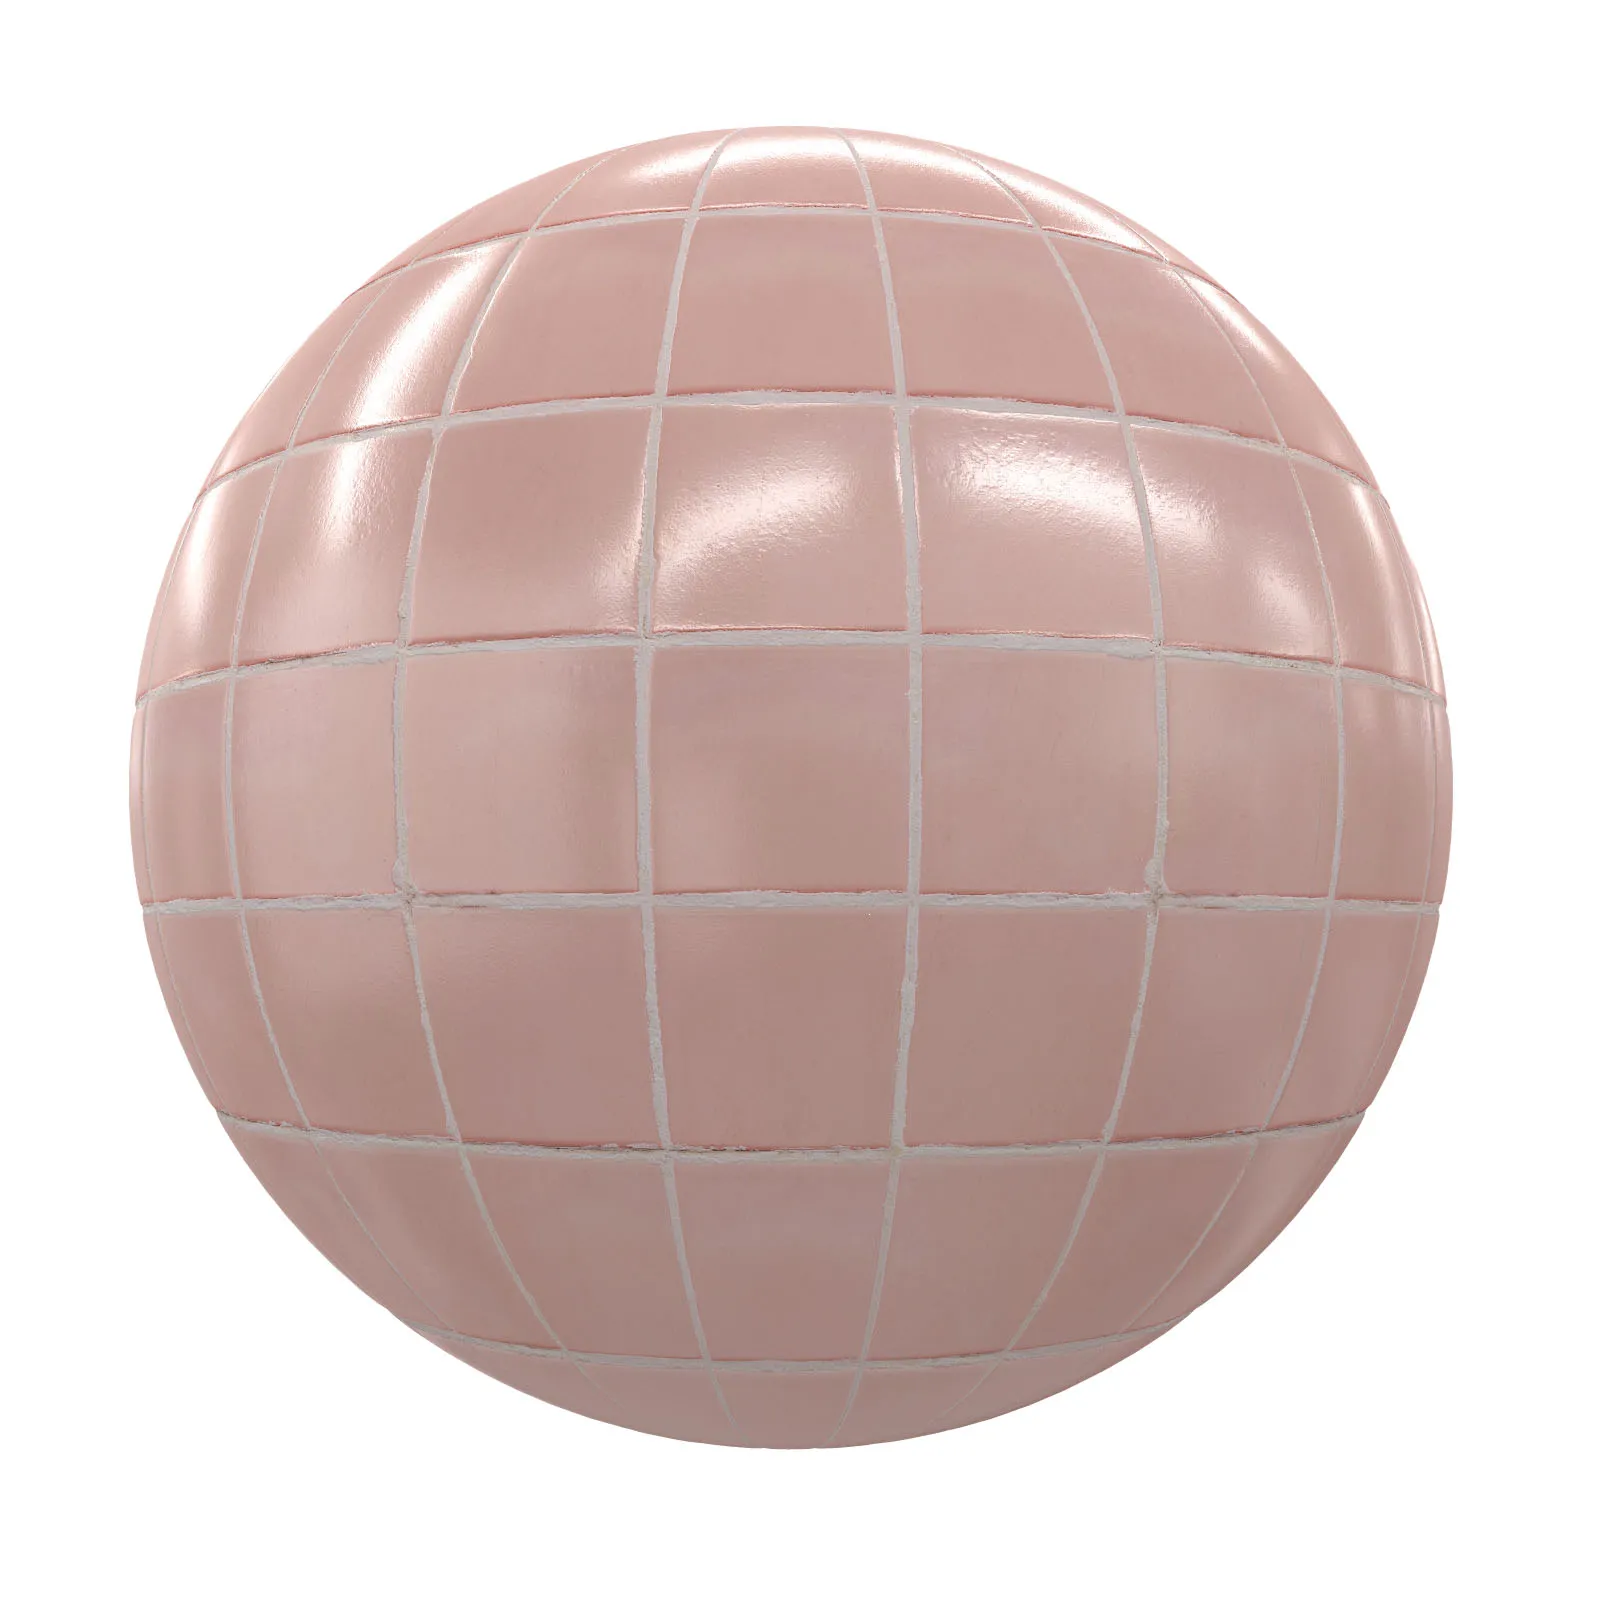 PBR CGAXIS TEXTURES – TILES – Pink Tiles 1